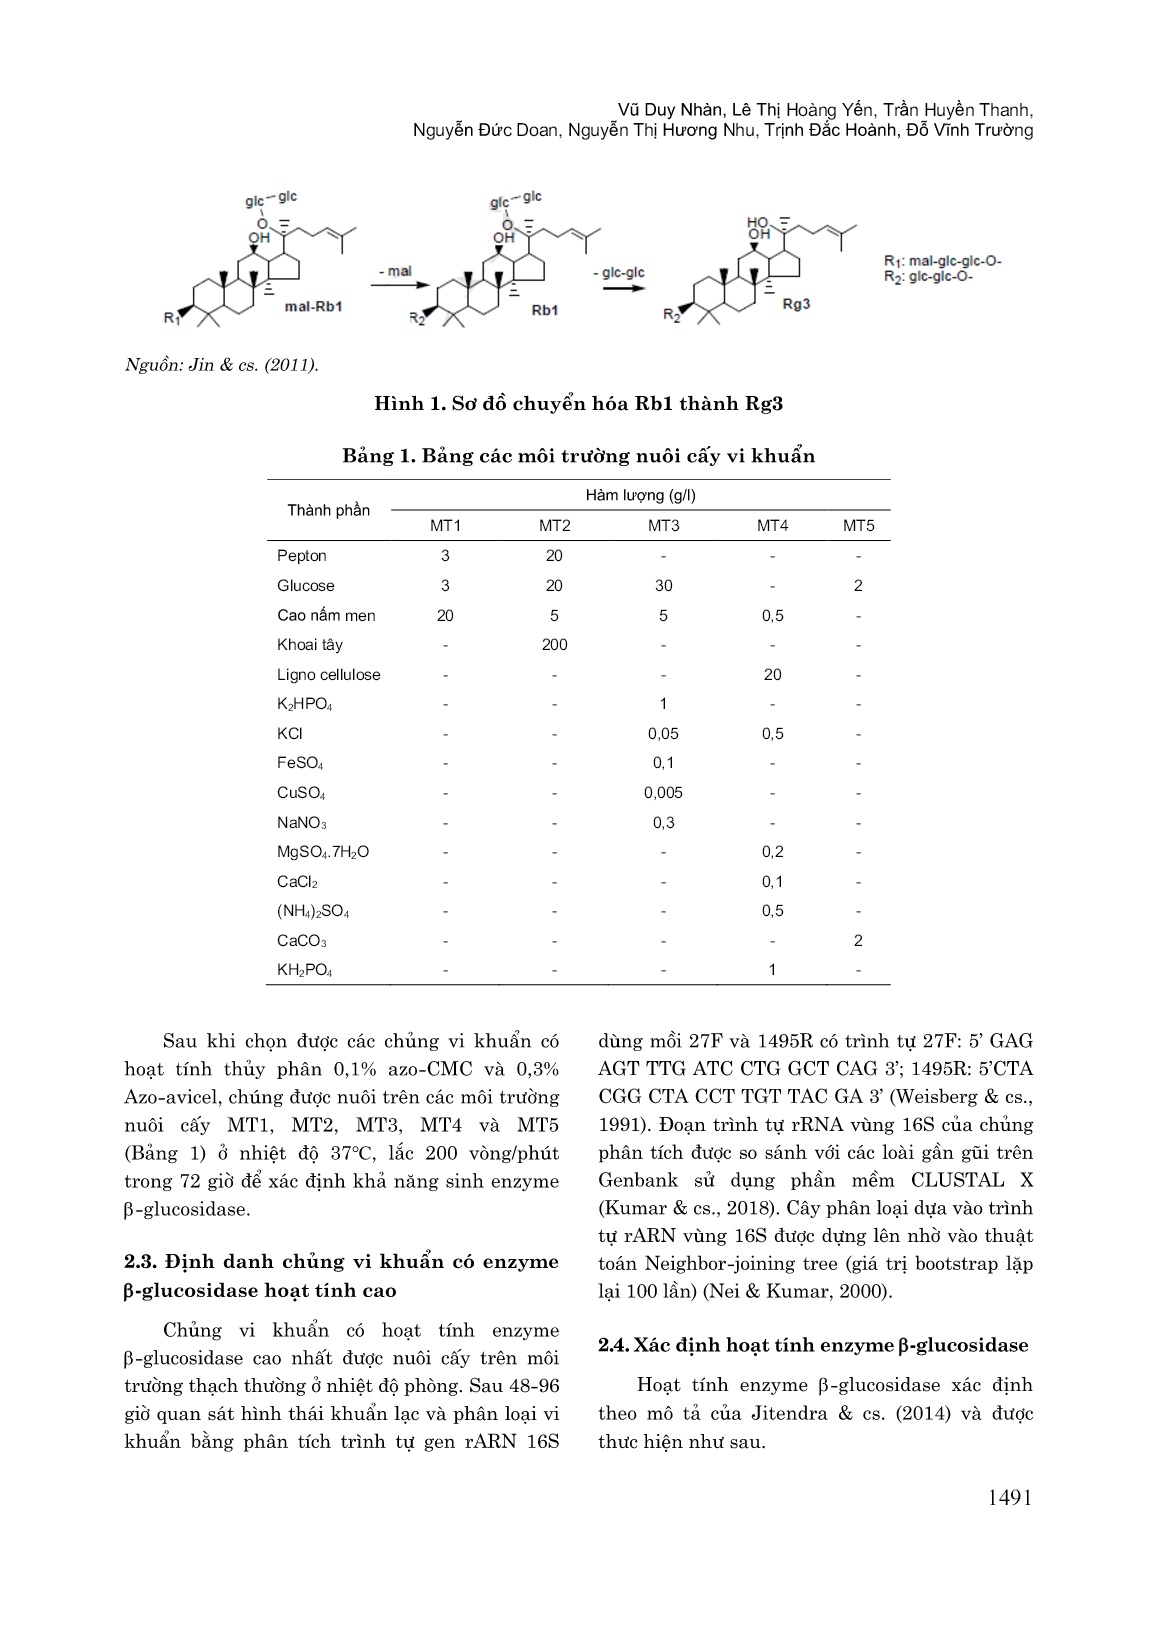 Tuyển chọn chủng vi khuẩn Bacillus Subtilis NL812 có khả năng sinh Enzyme β-glucosidase để chuyển hóa Ginsenoside từ tam thất trang 3